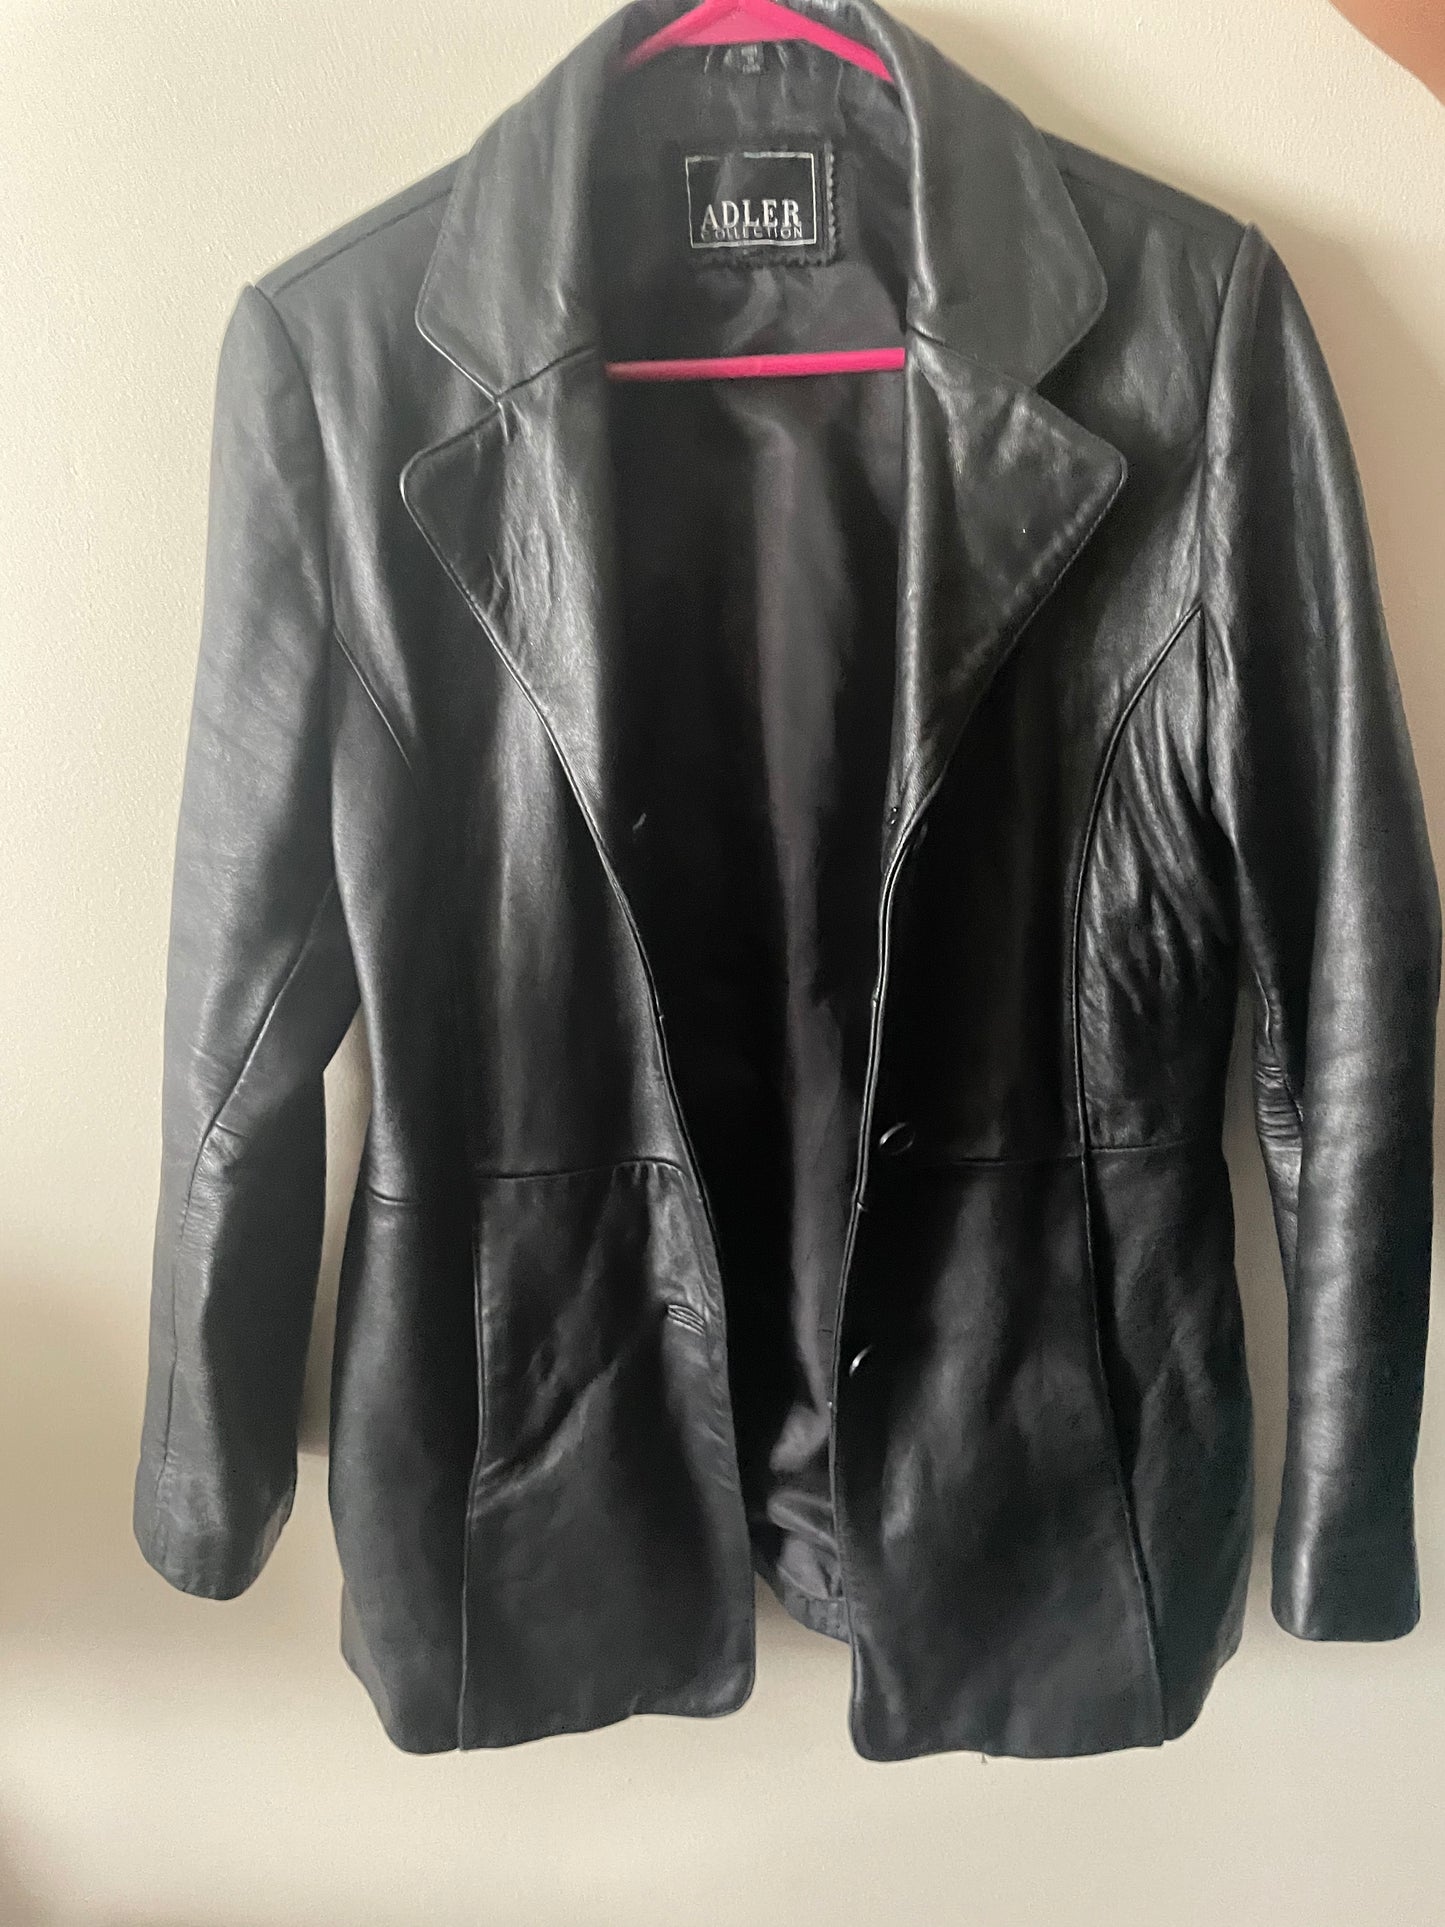 Large women’s leather jacket